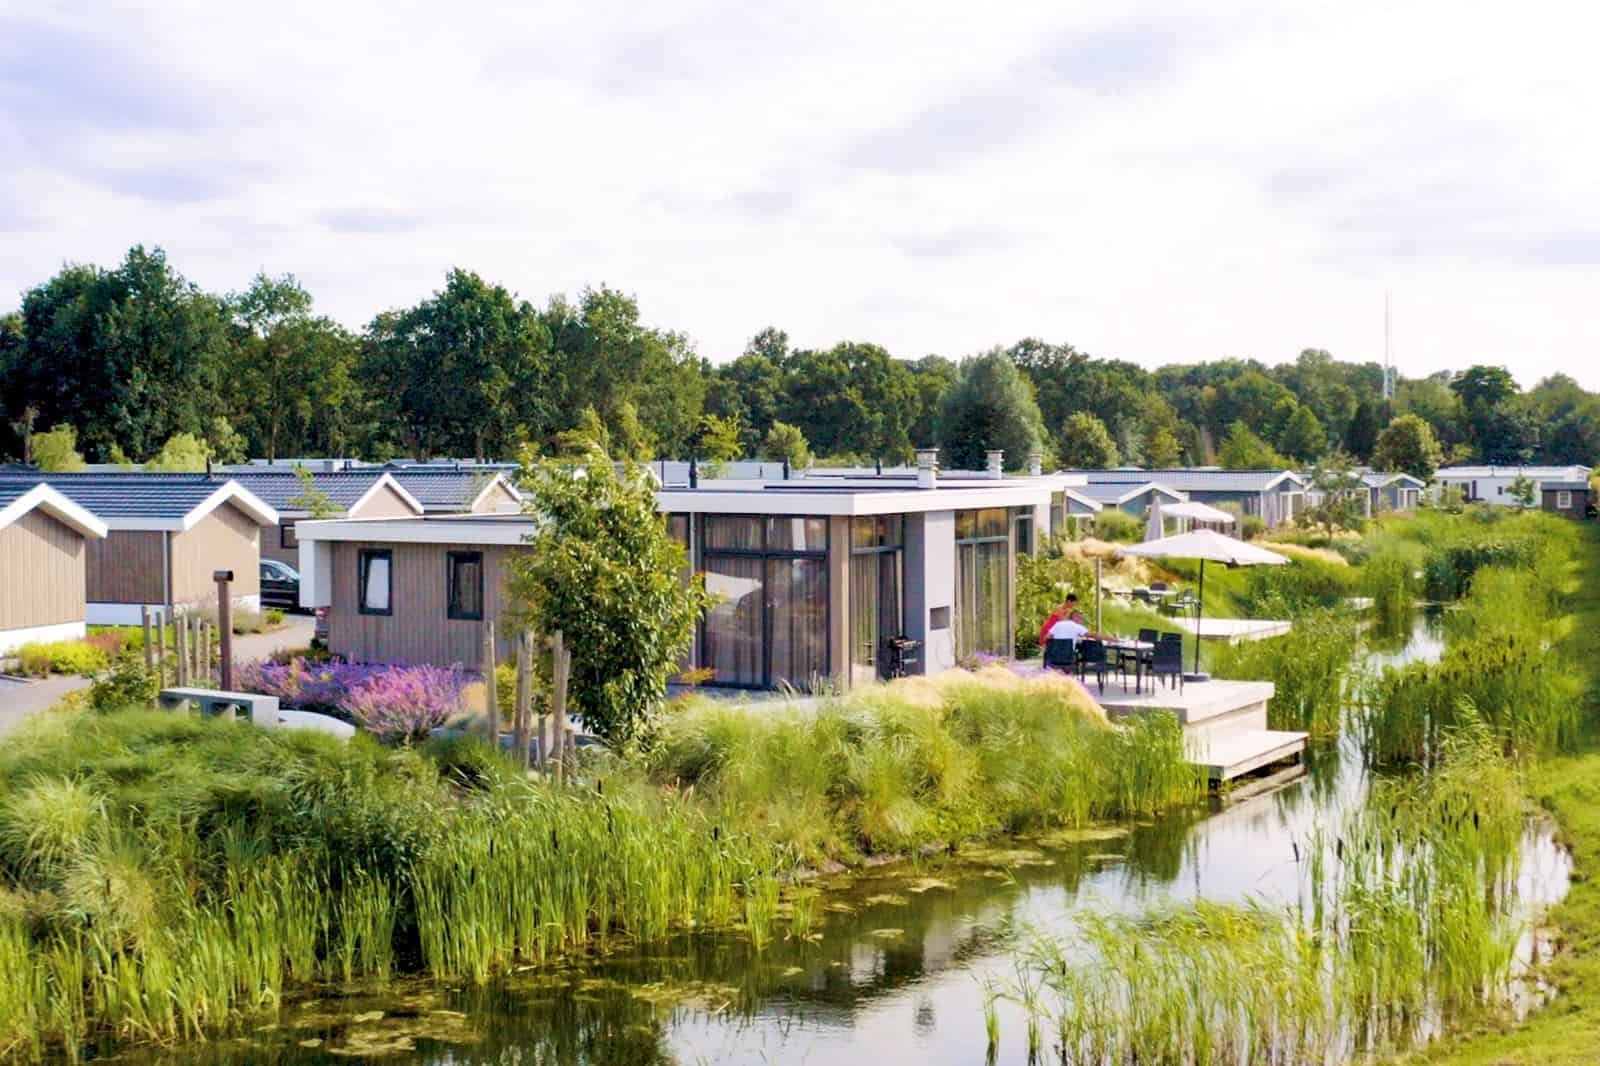 EuroParcs Resort Zuiderzee in Biddinghuizen, Flevoland